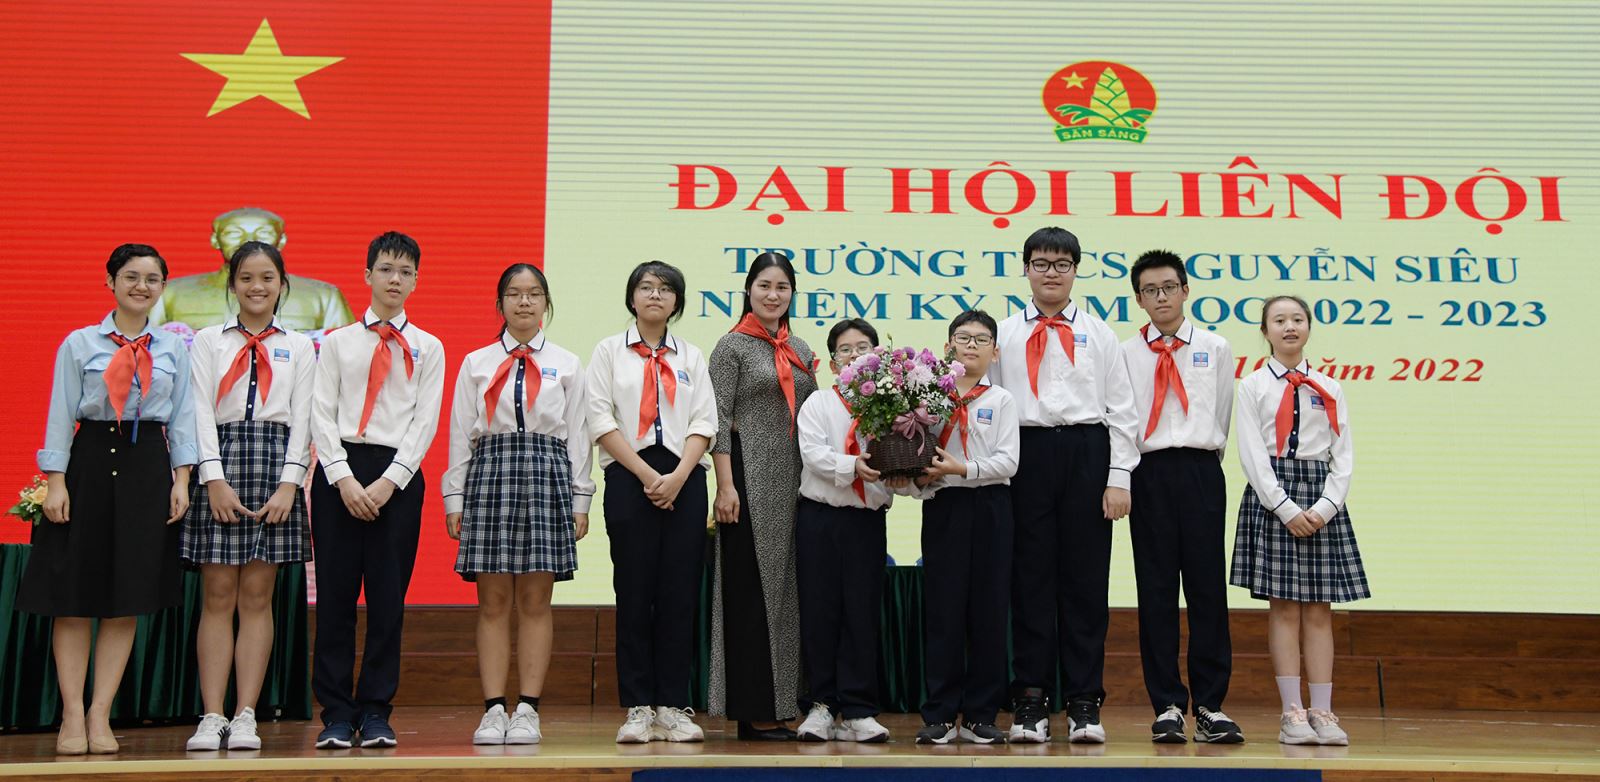 Trường THCS Nguyễn Siêu tổ chức thành công Đại hội Liên đội năm học 2022-2023